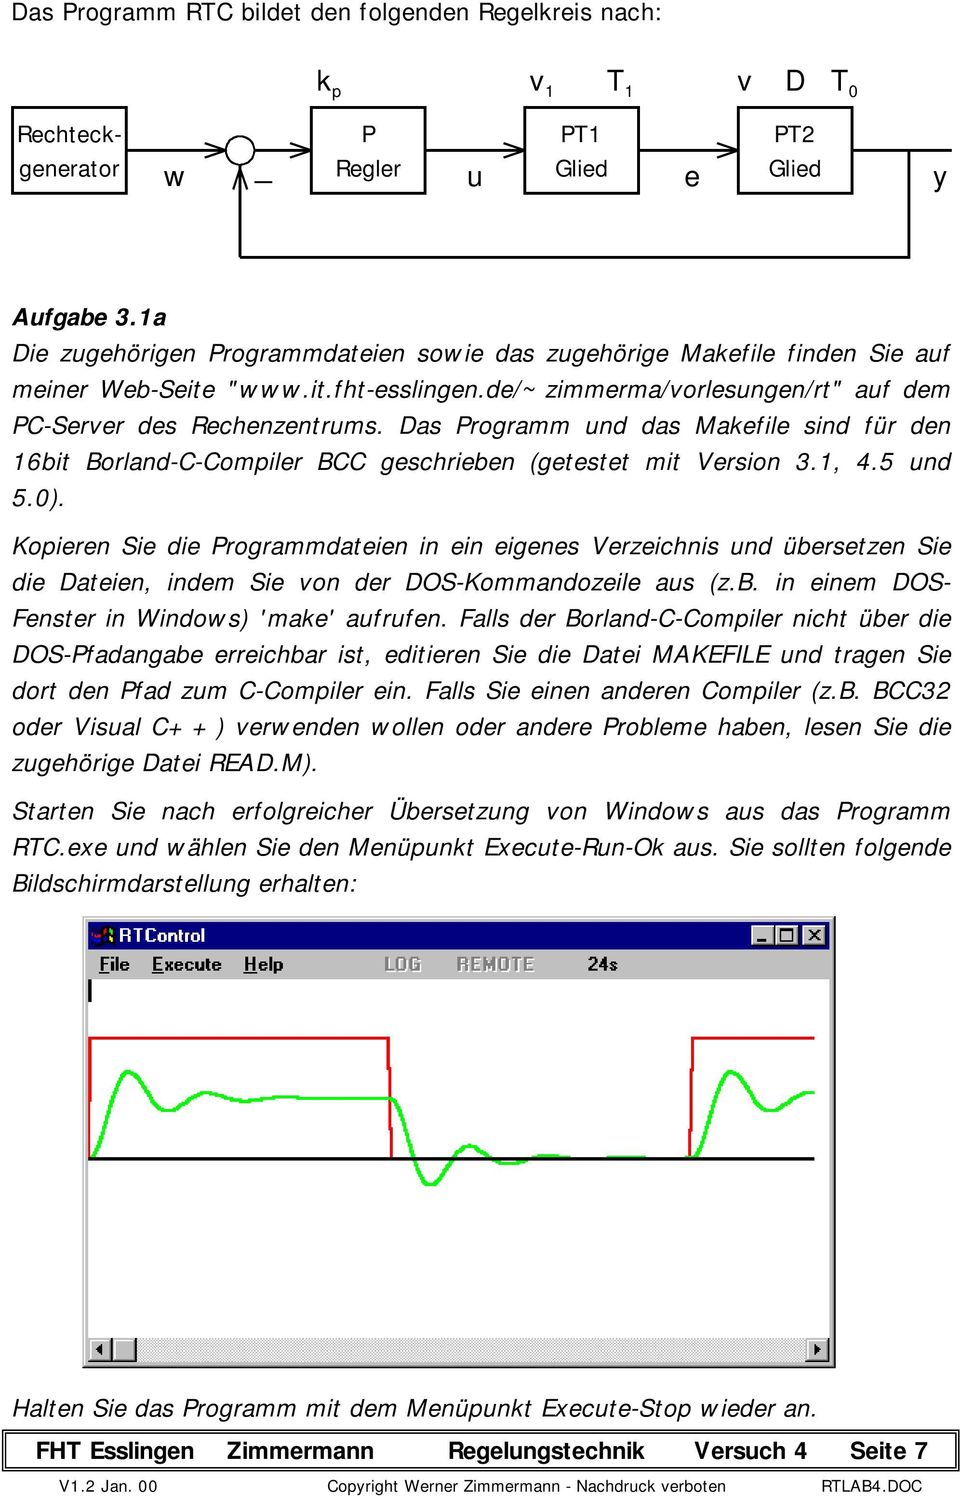 Das Programm und das Makefile sind für den 16bit Borland-C-Compiler BCC geschrieben (getestet mit Version 3.1, 4.5 und 5.0).